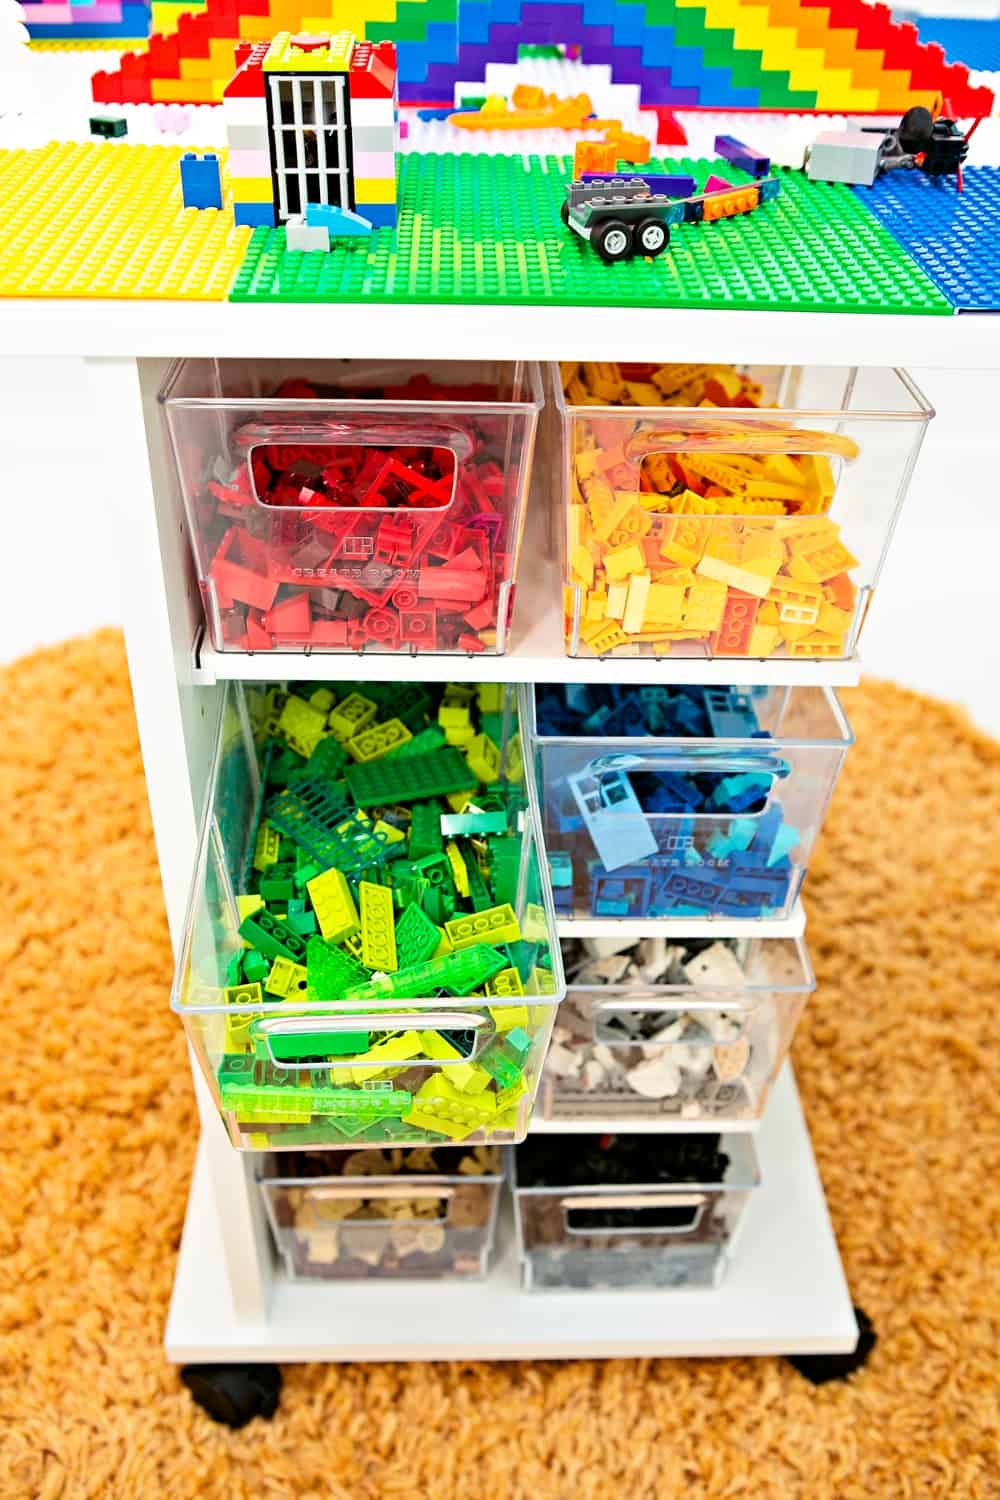 LEGO storage bins